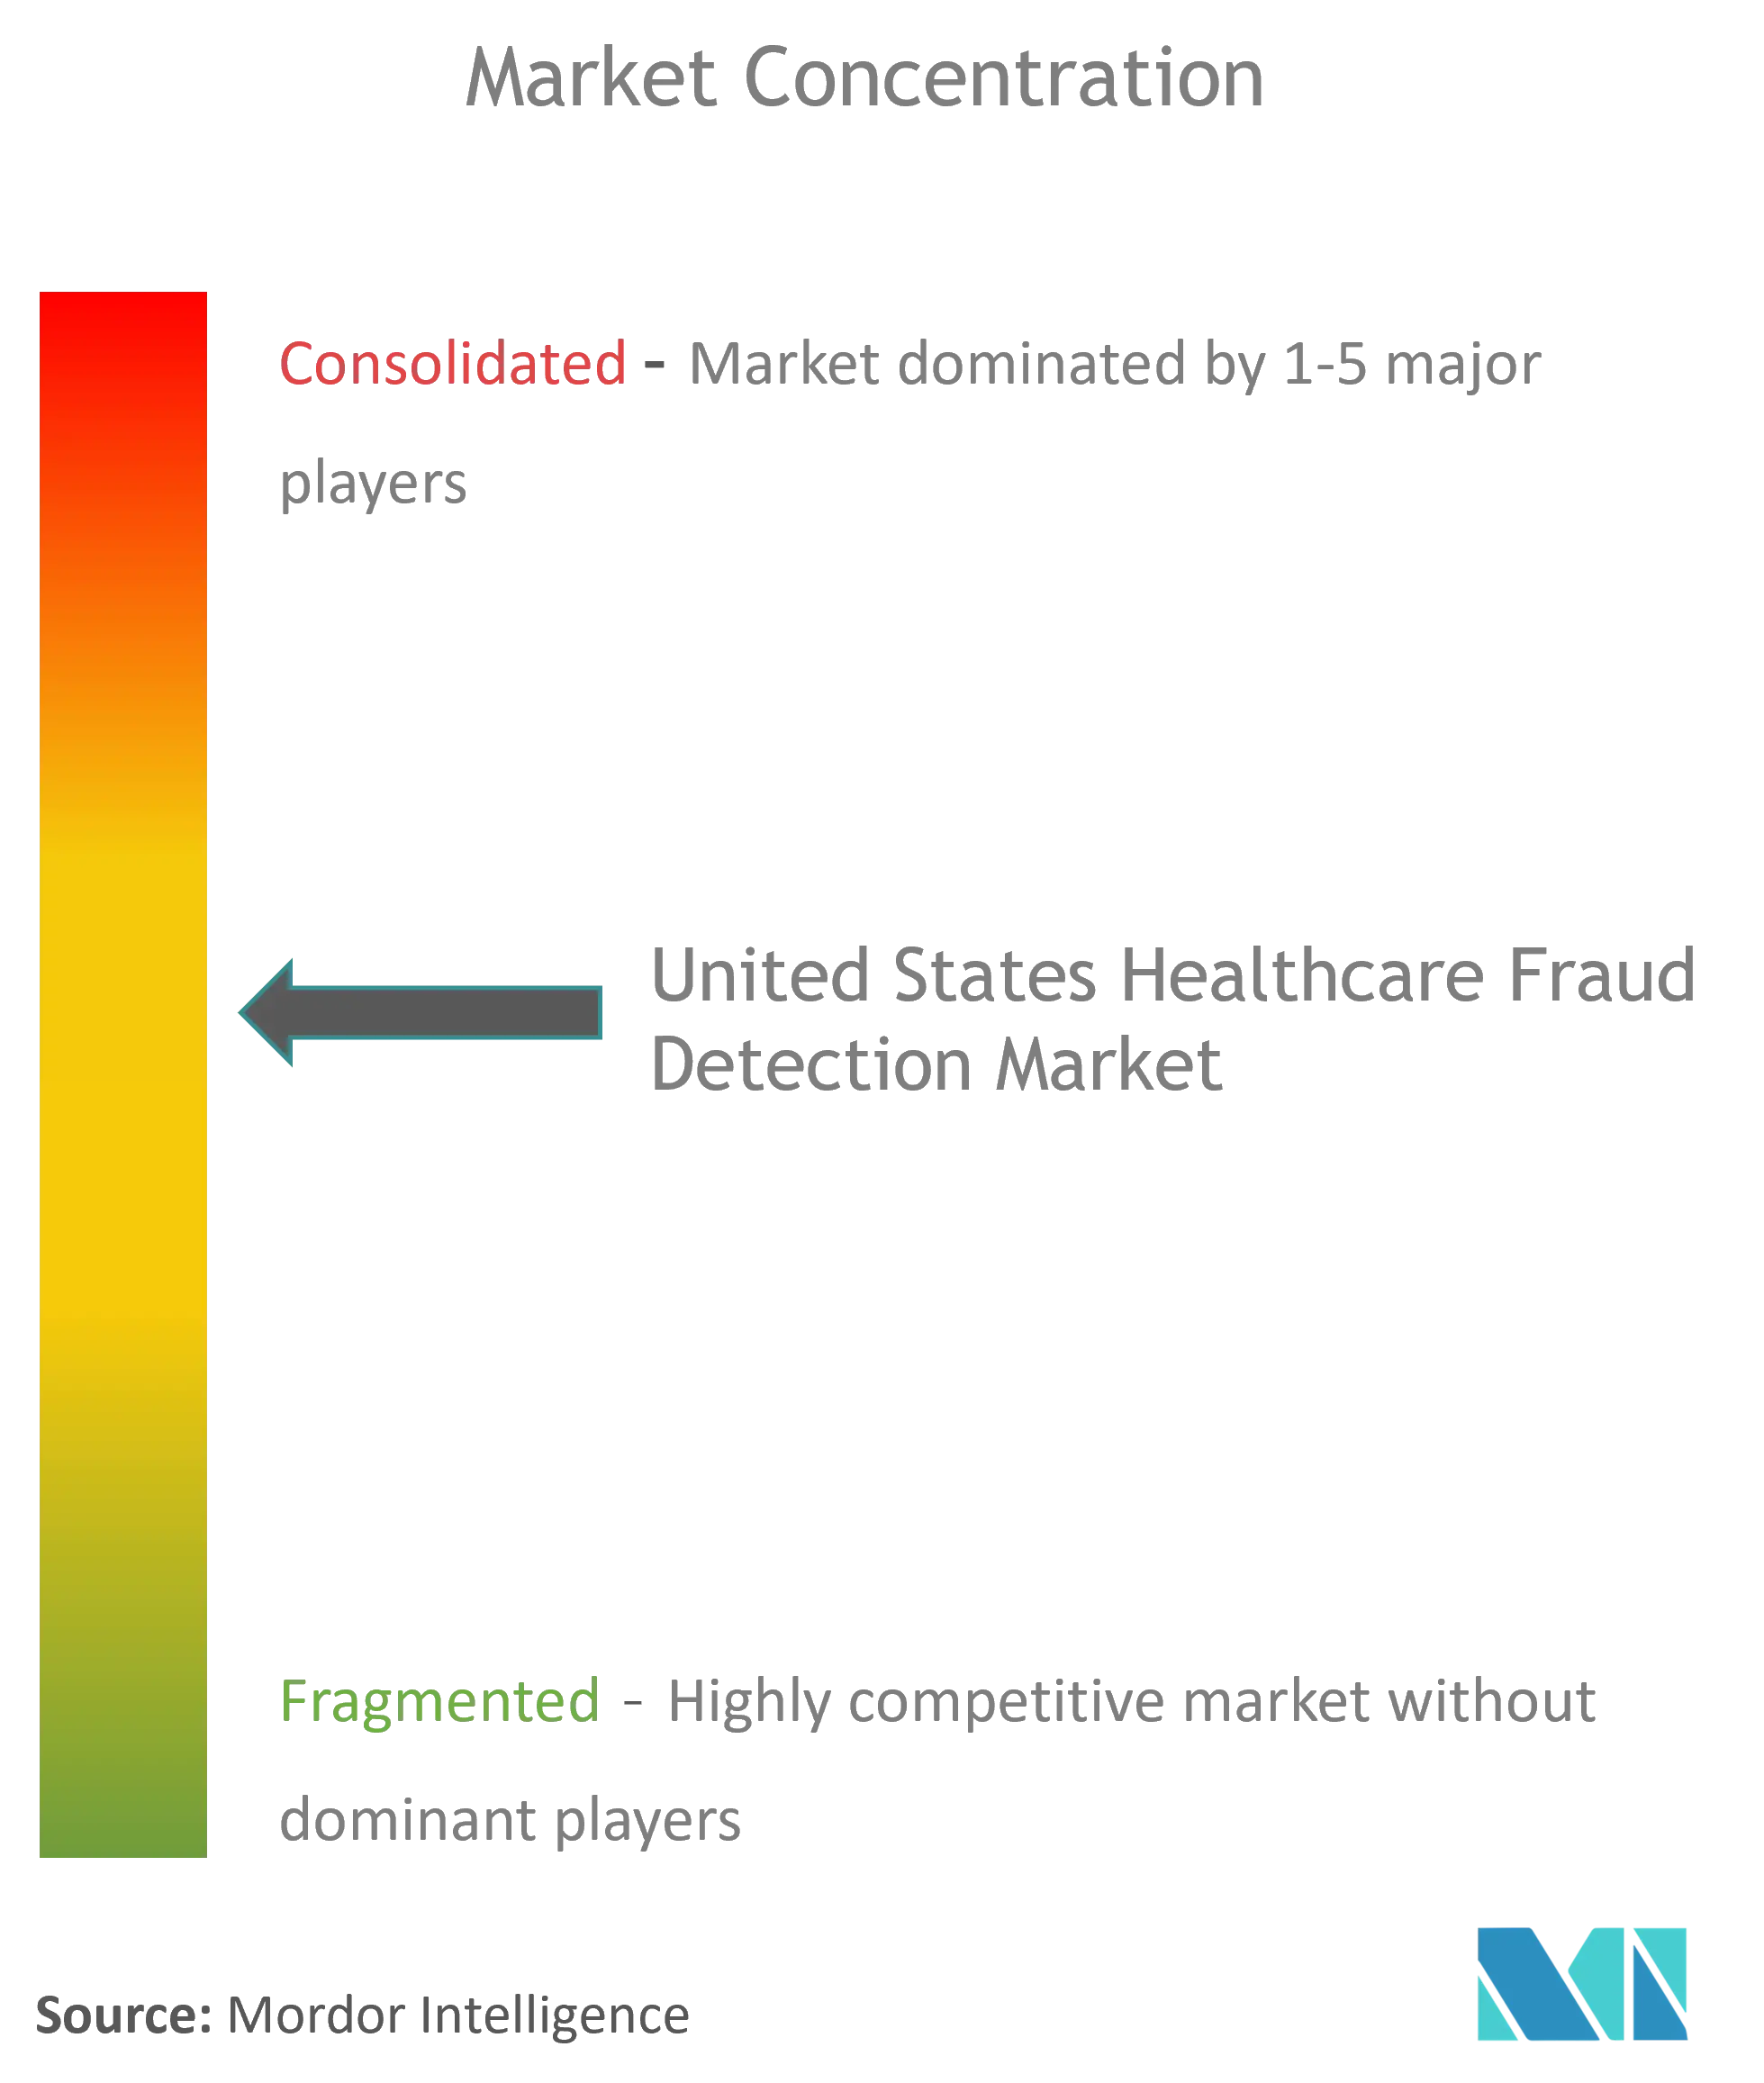 Détection de fraude dans le domaine des soins de santé aux États-UnisConcentration du marché